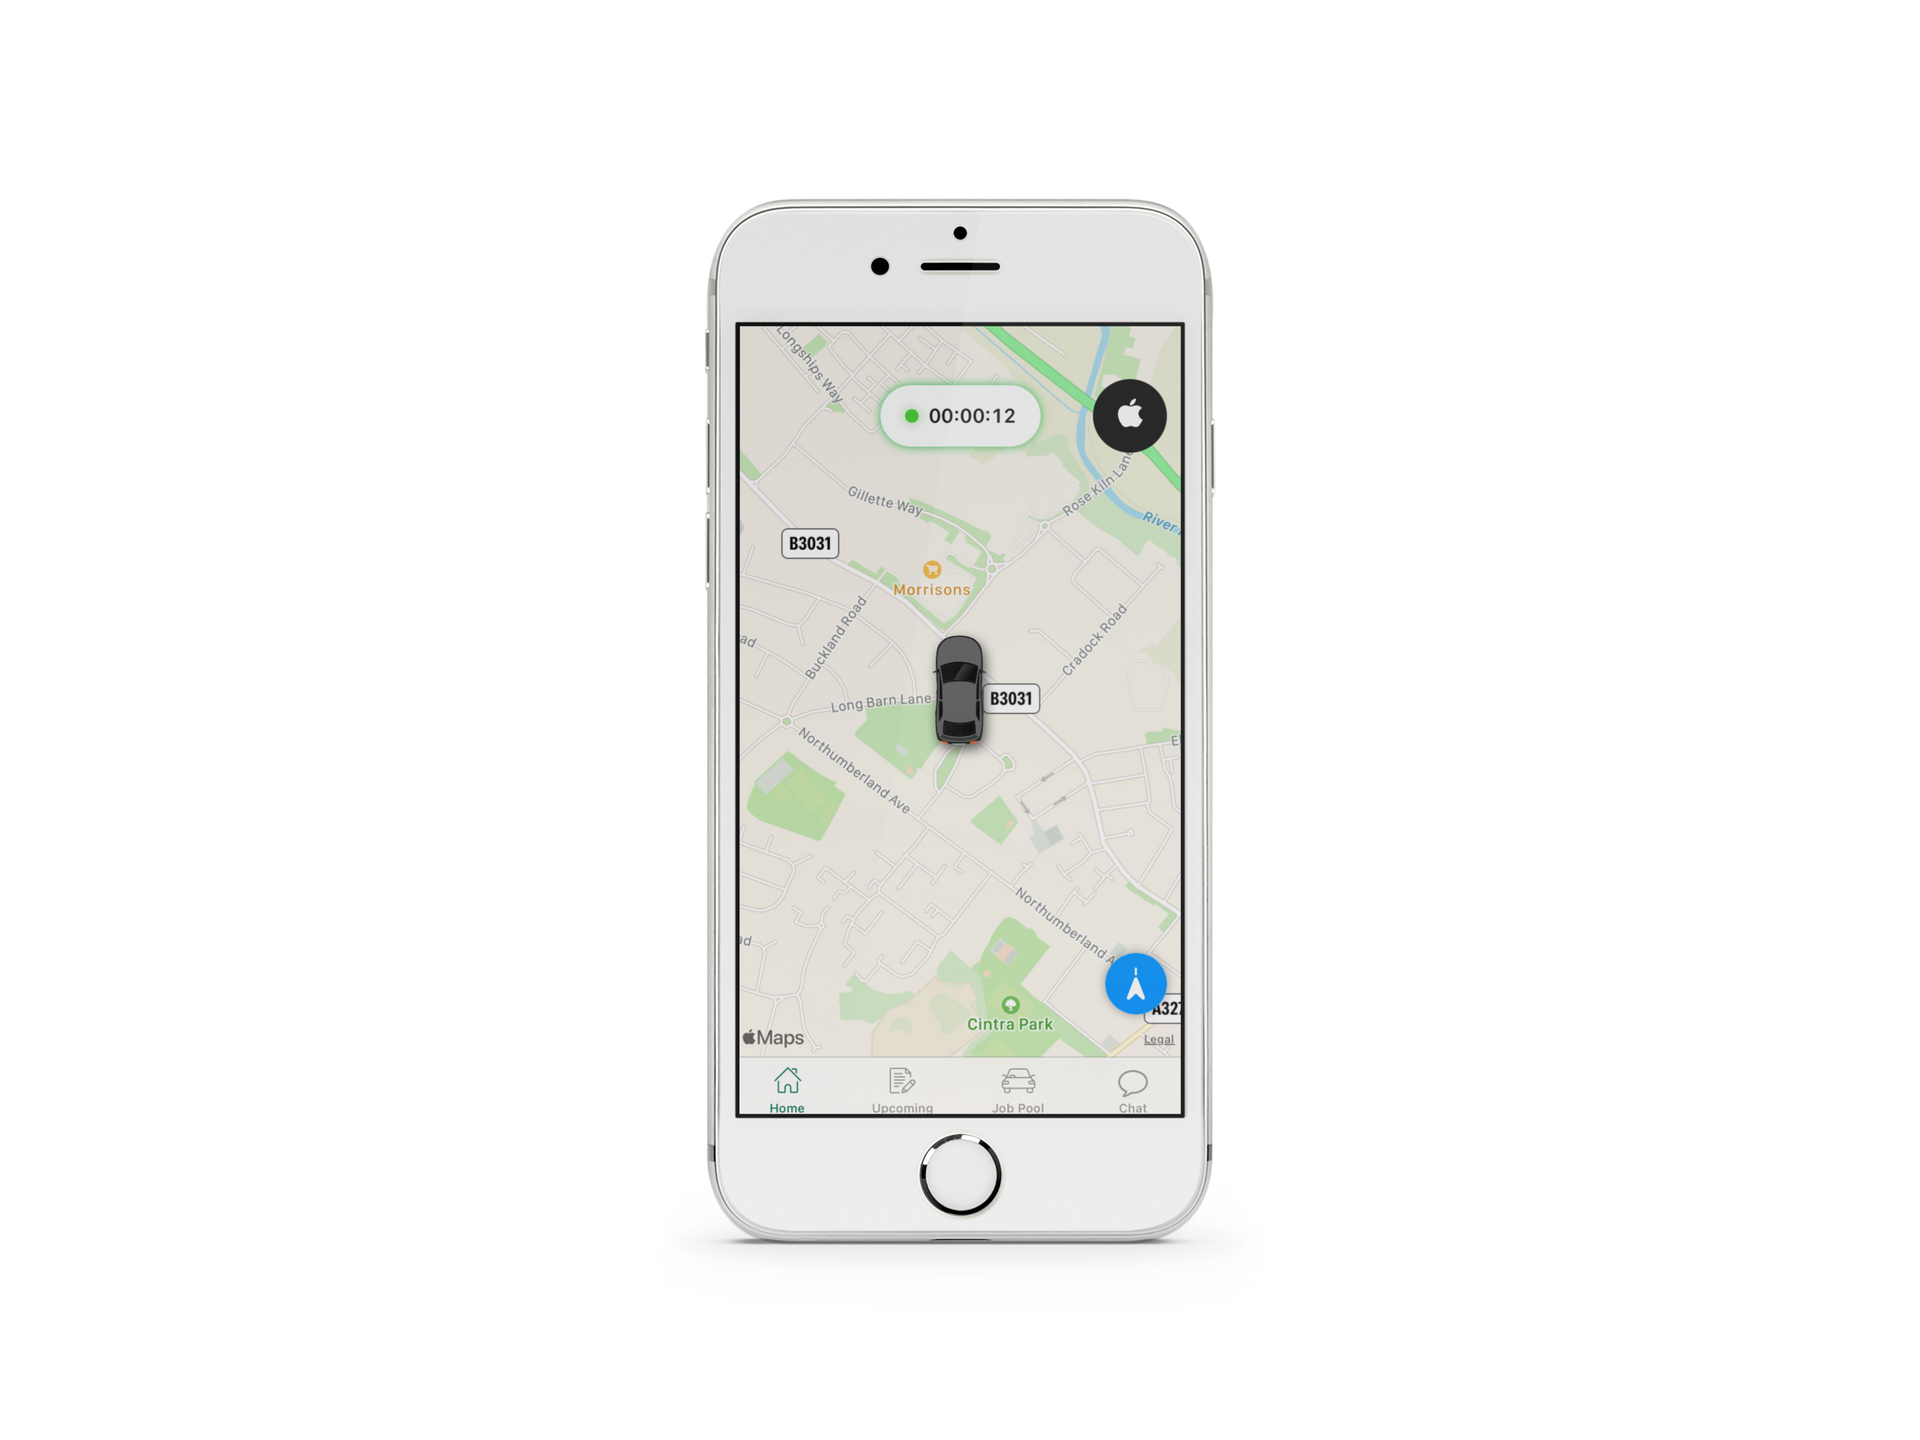 CabTime Driver App